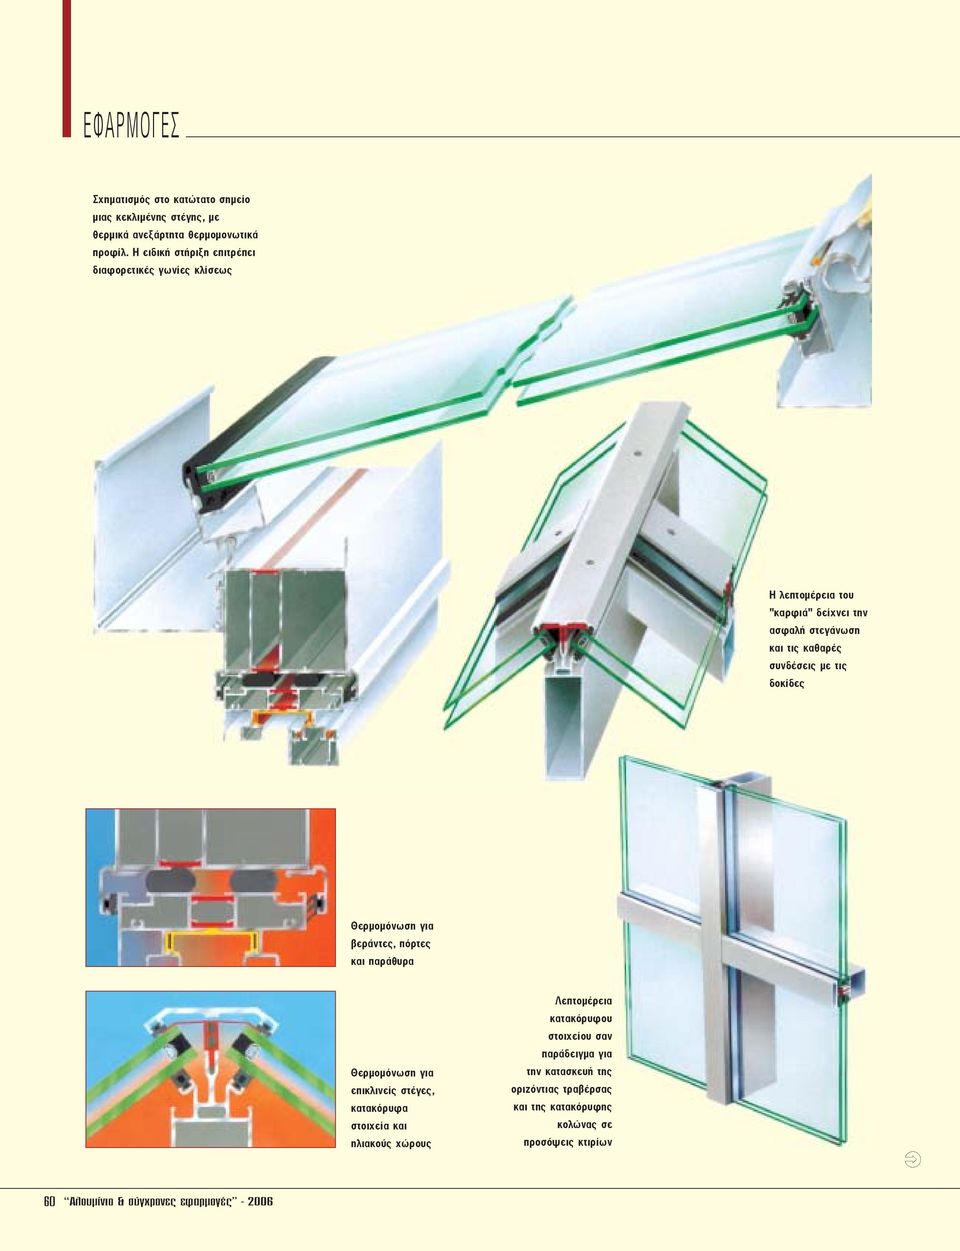 συνδέσεις µε τις δοκίδες Θερµοµόνωση για βεράντες, πόρτες και παράθυρα Θερµοµόνωση για επικλινείς στέγες, κατακόρυφα στοιχεία